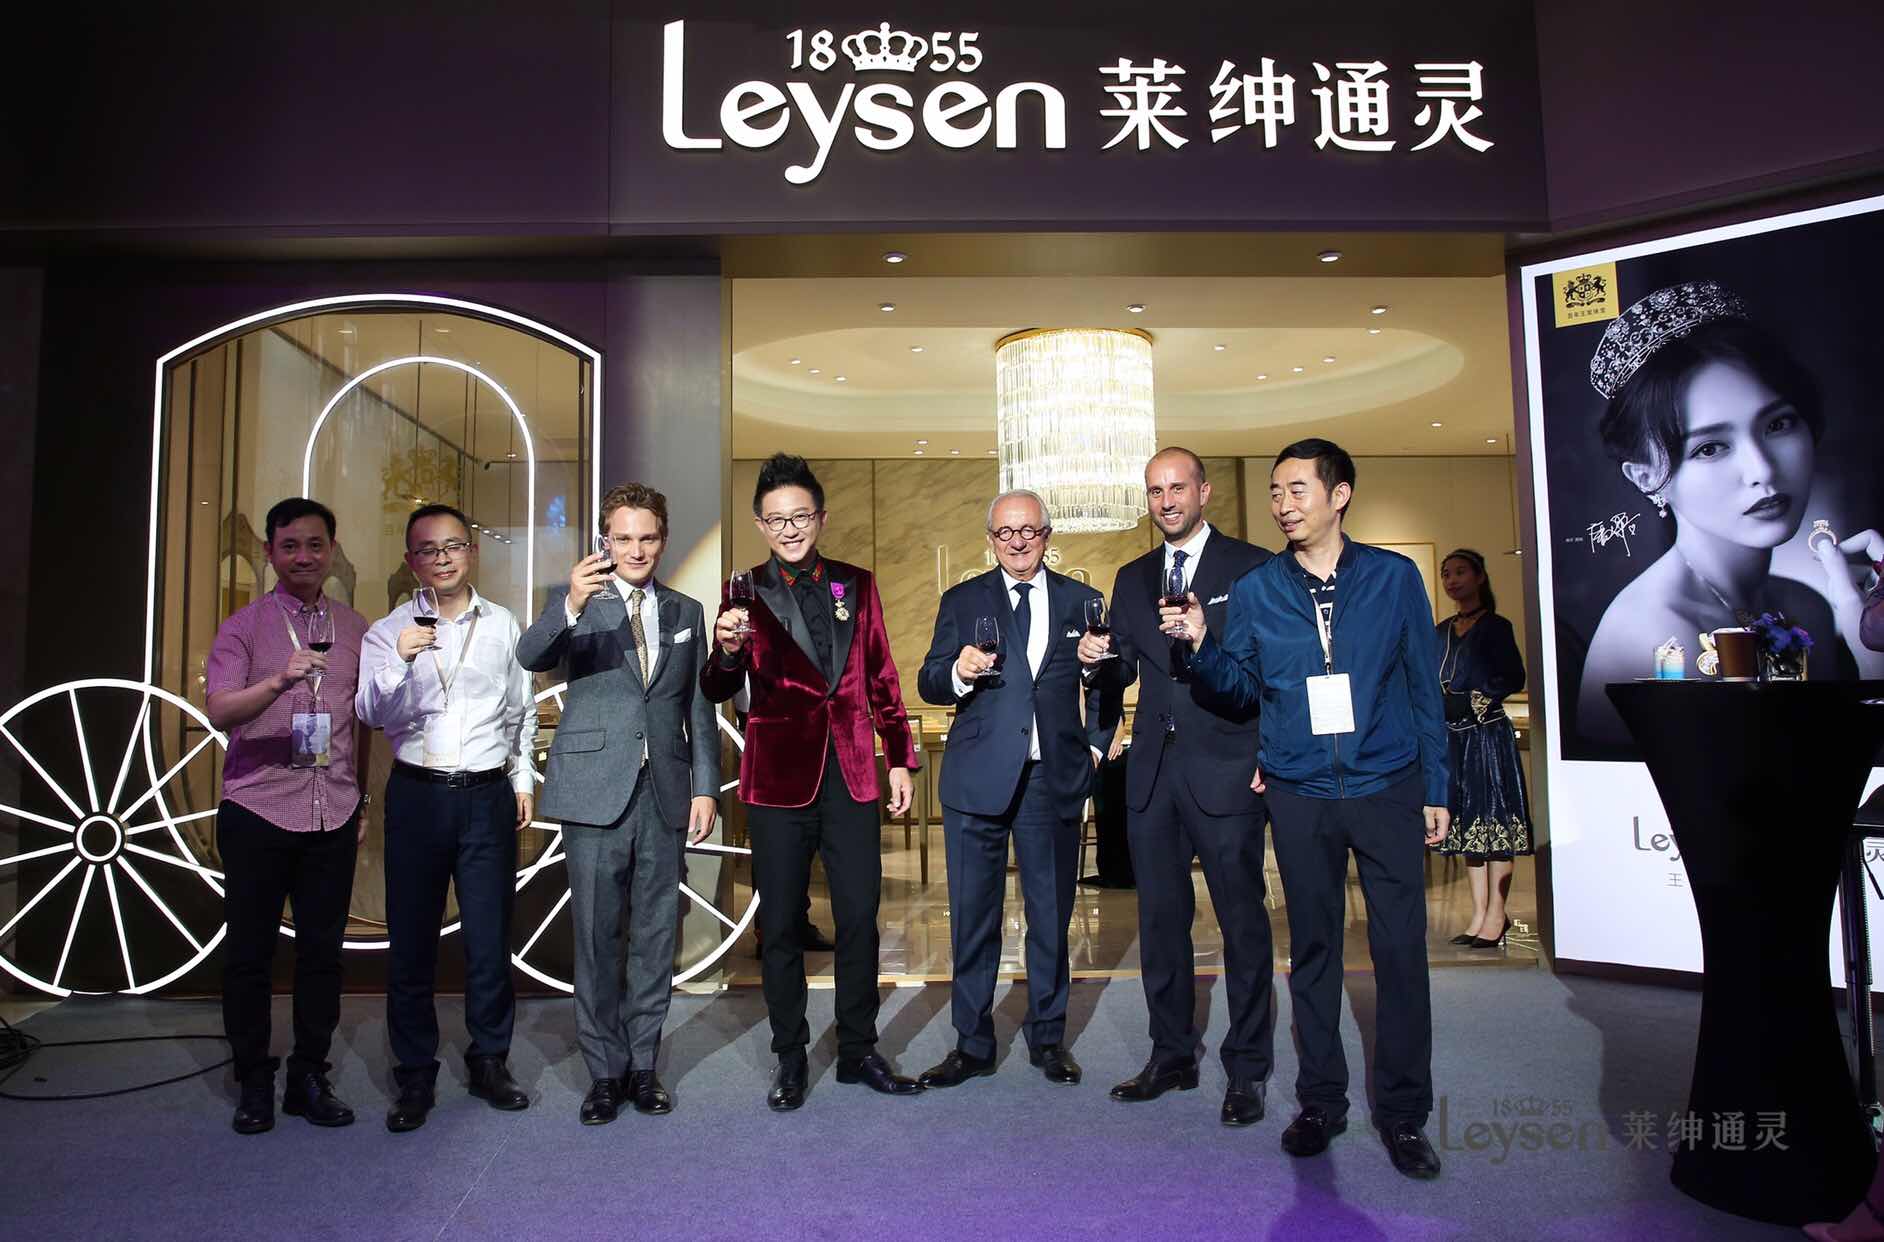 比利时百年王室珠宝品牌Leysen1855落户中国__财经头条